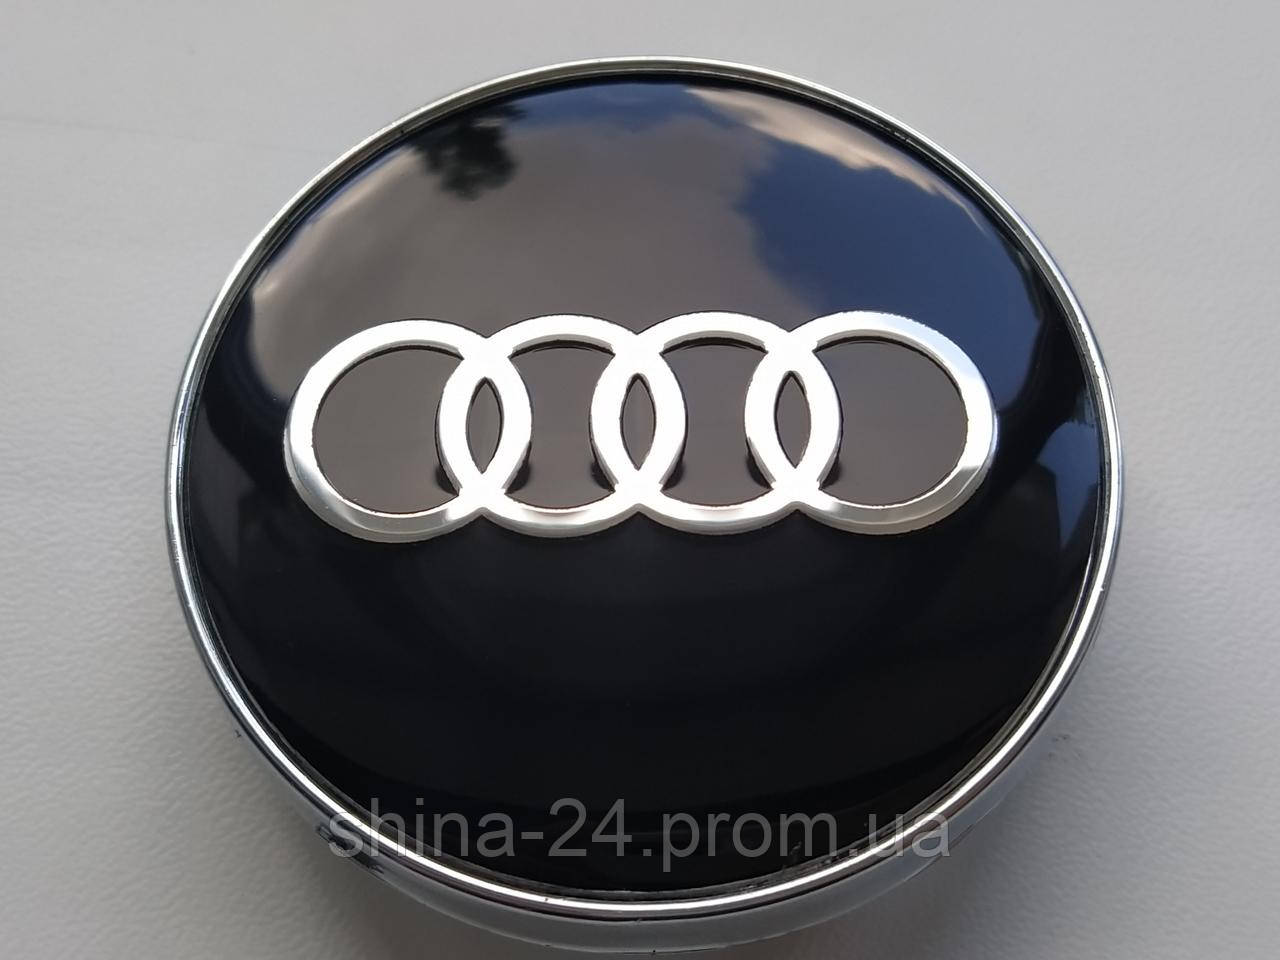 Колпачки заглушки в литые диски Audi 60/56/10 мм. Черные Хром